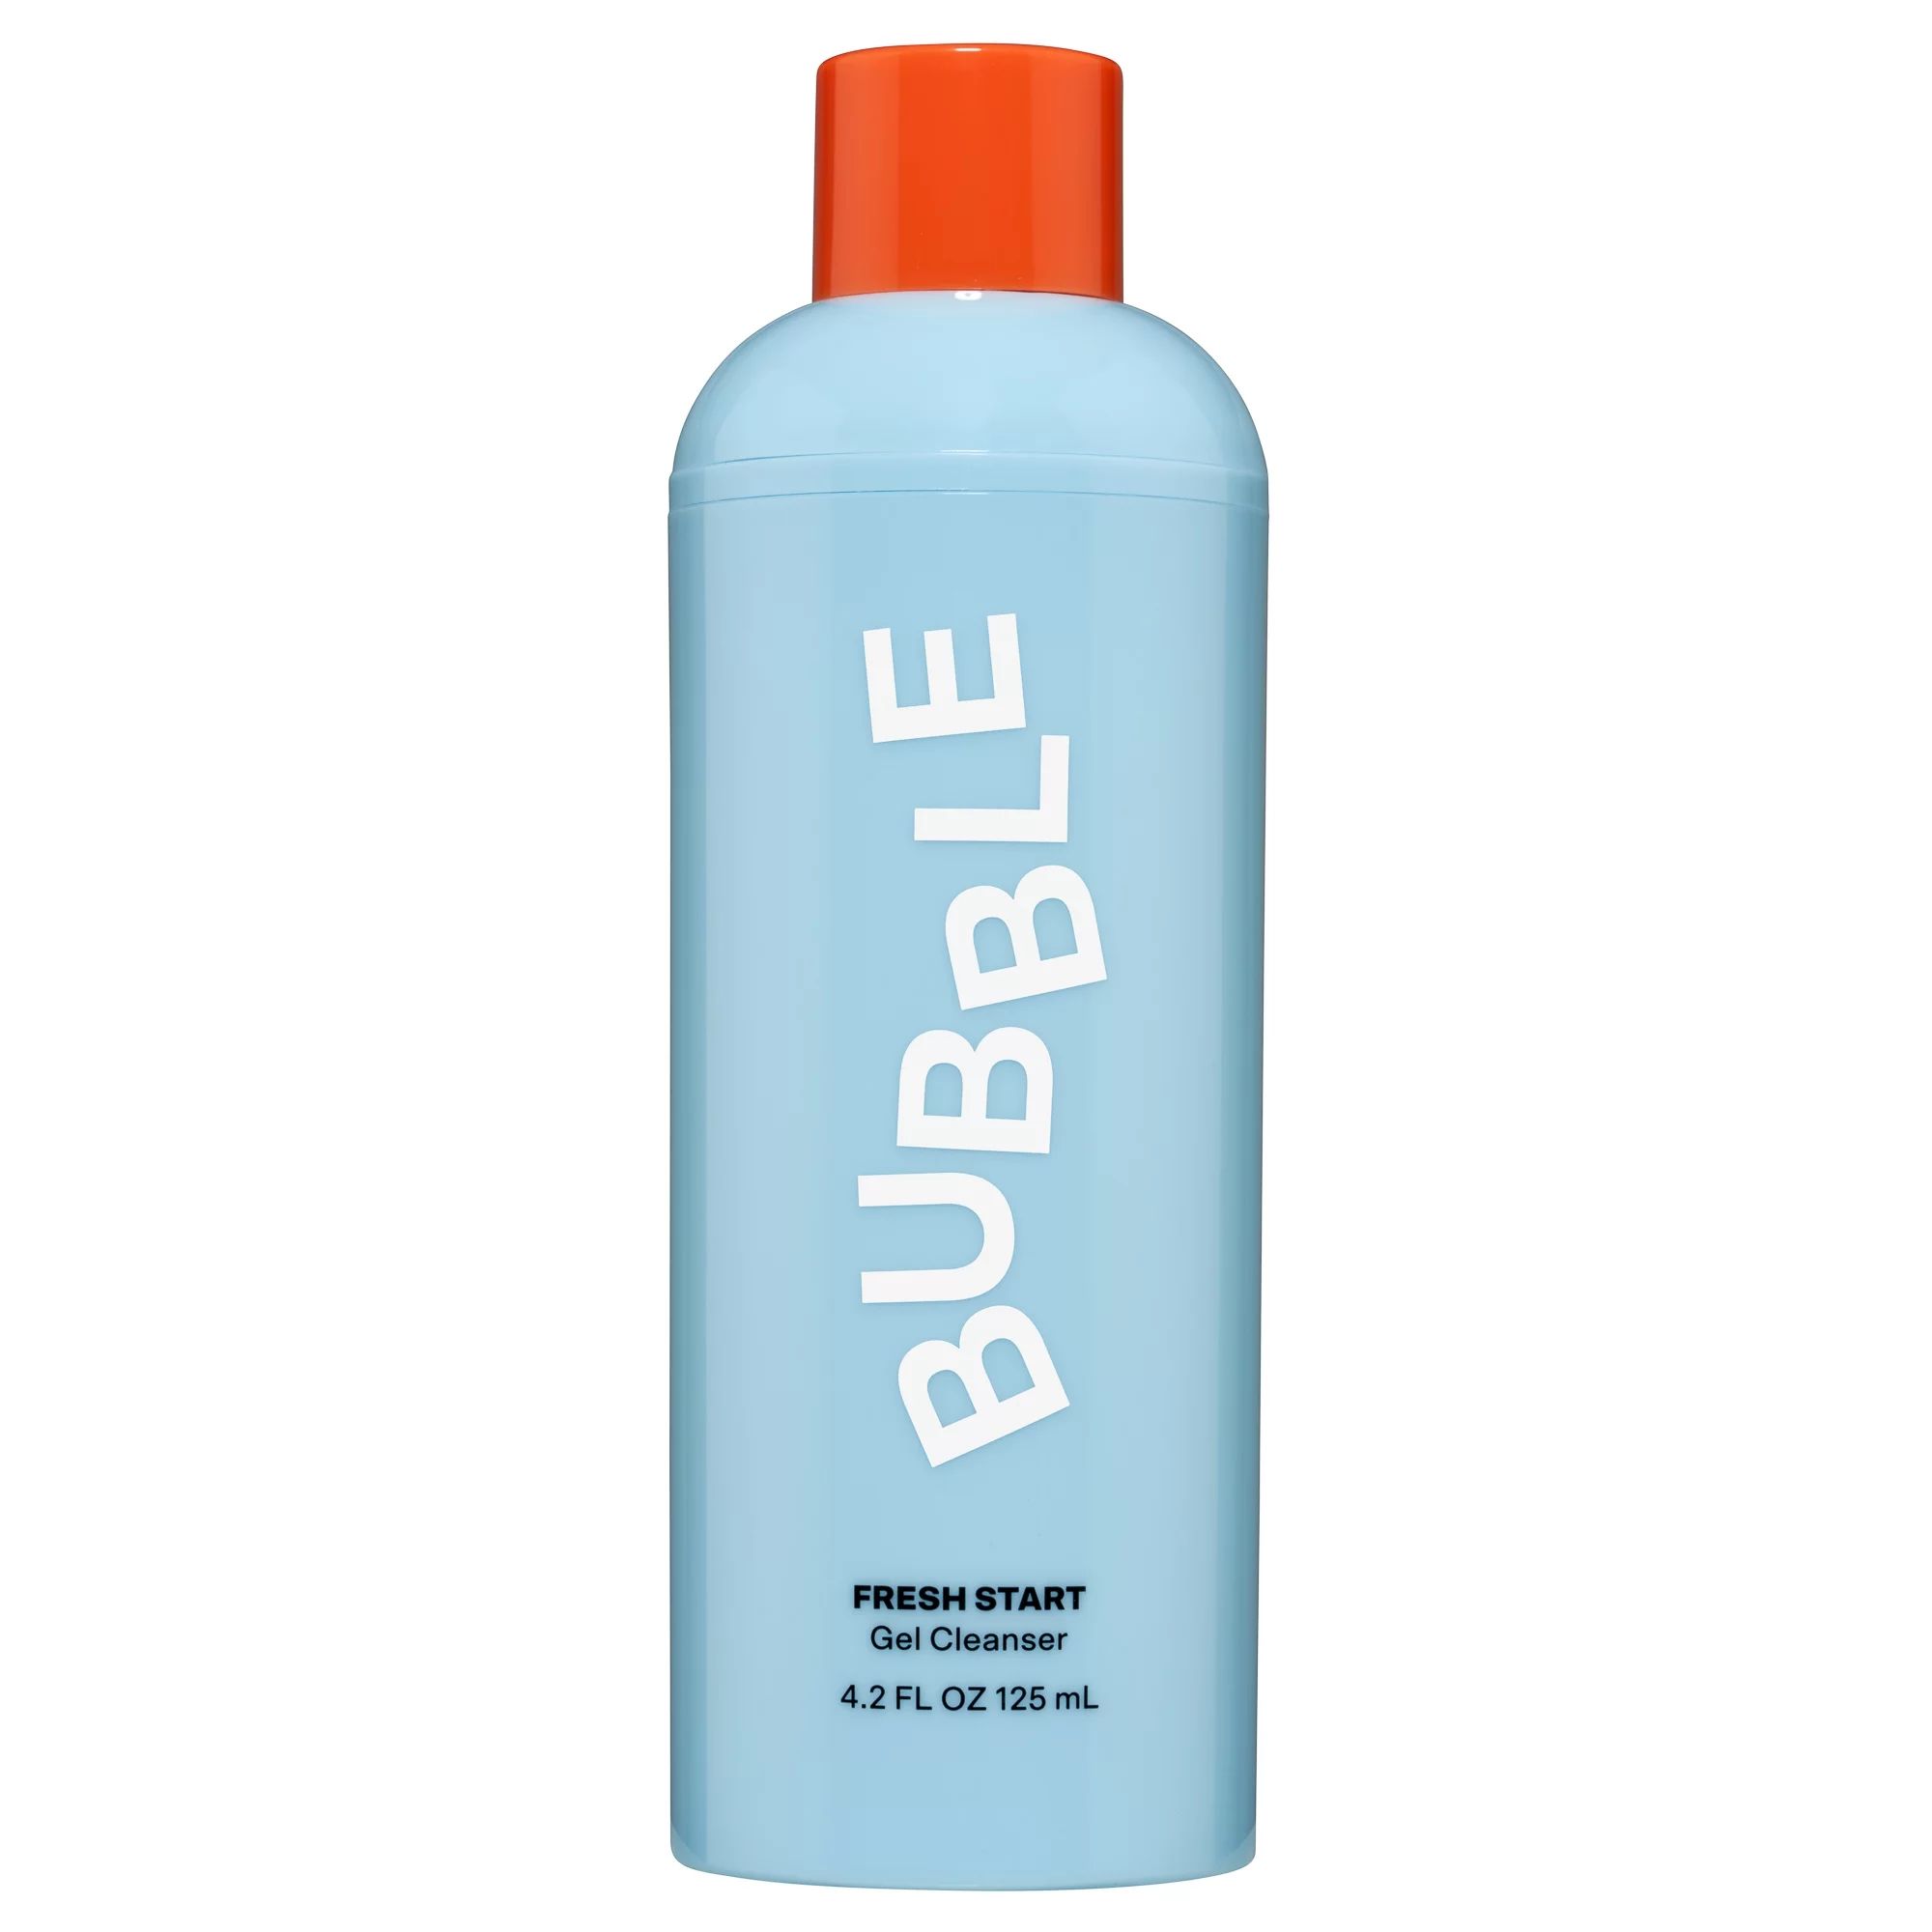 Bubble Skincare Fresh Start Gel Cleanser, For All Skin Types, 4.2 FL OZ / 125mL | Walmart (US)